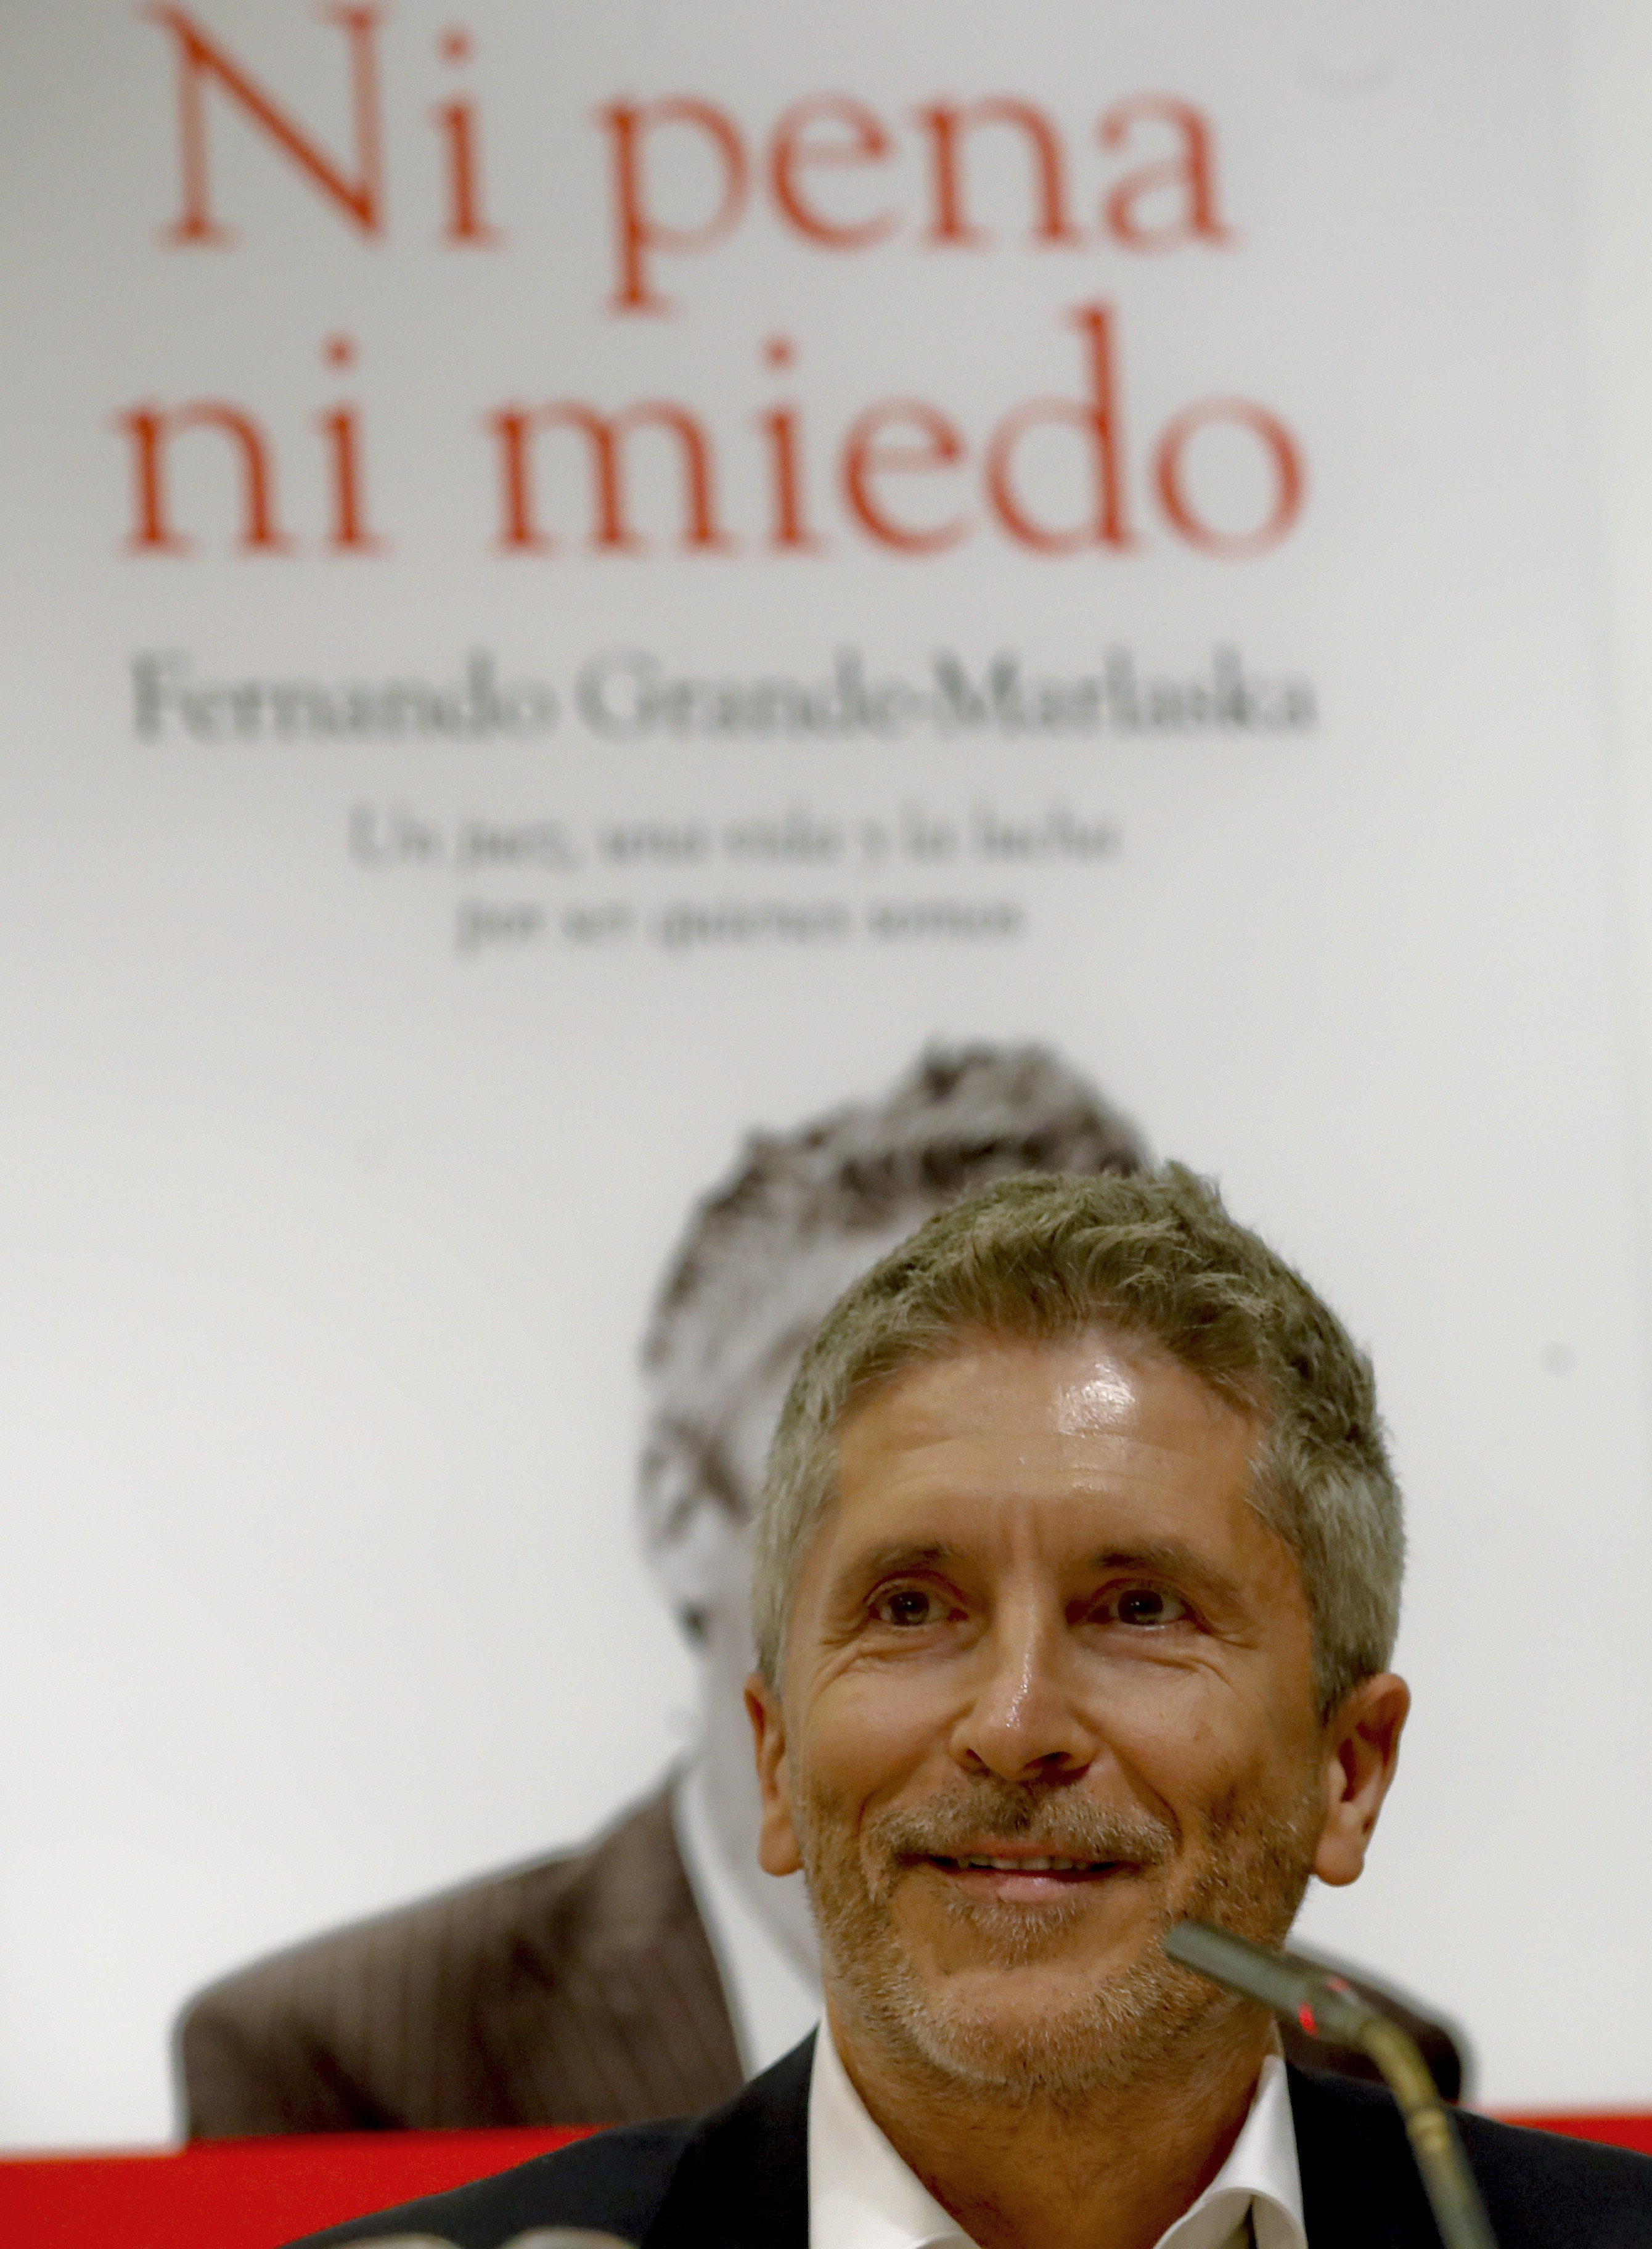 El magistrado Fernando Grande-Marlaska durante la presentación del libro "Ni pena ni miedo. Un juez, una vida y la lucha por ser quienes somos".